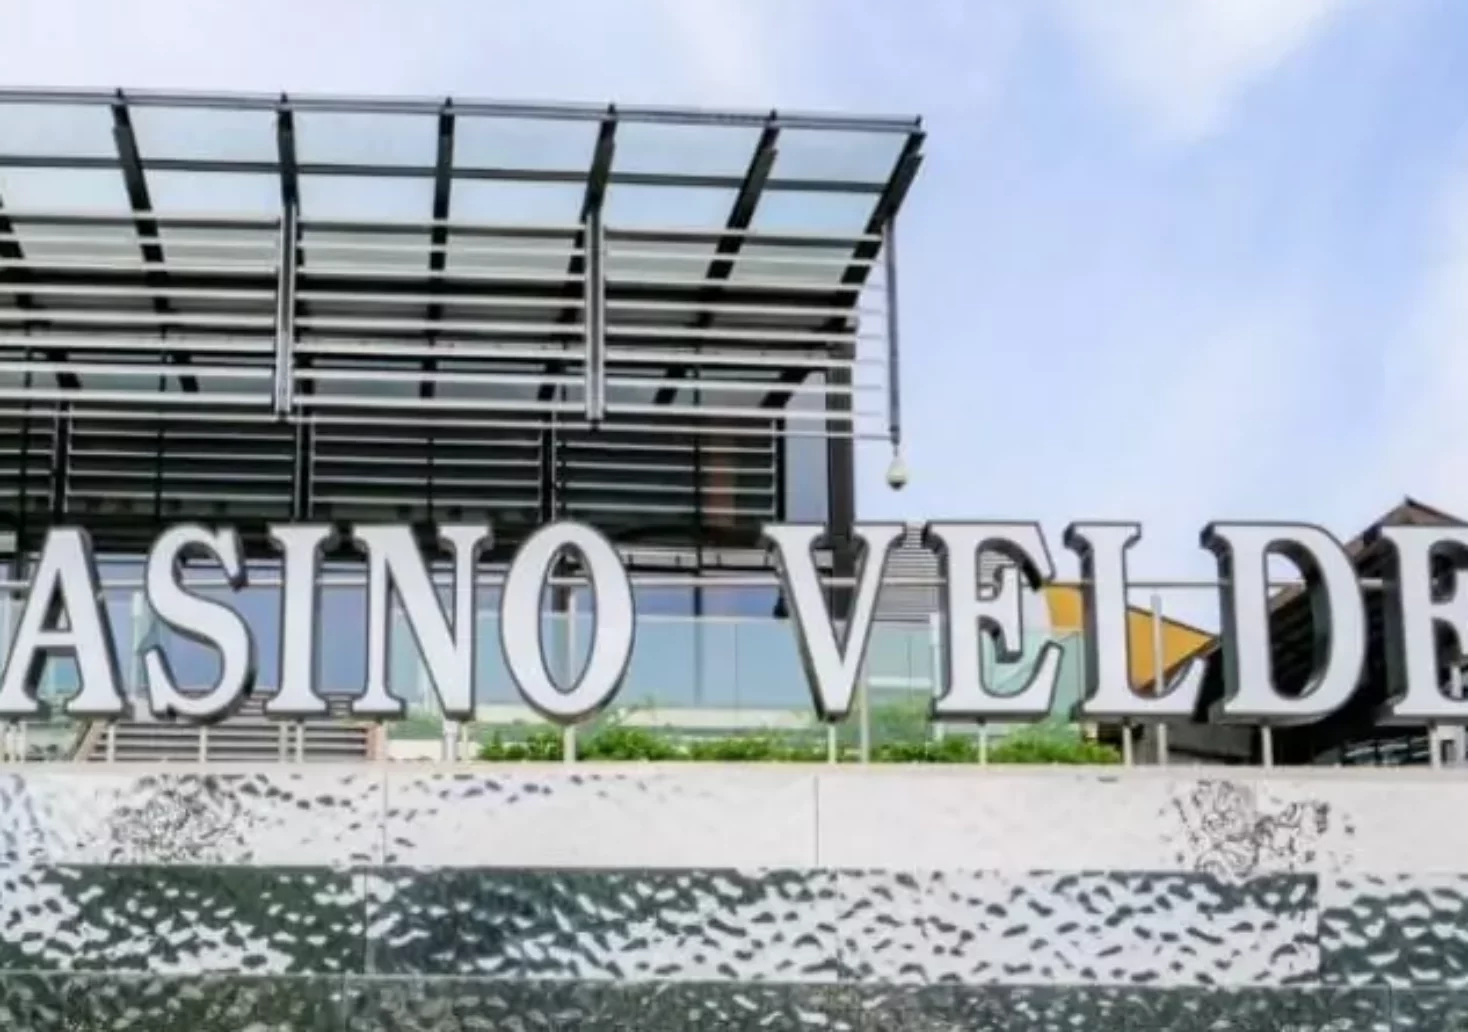 Foto auf 5min.at zeigt den großen "Casino Velden"-Schriftzug im Freien.